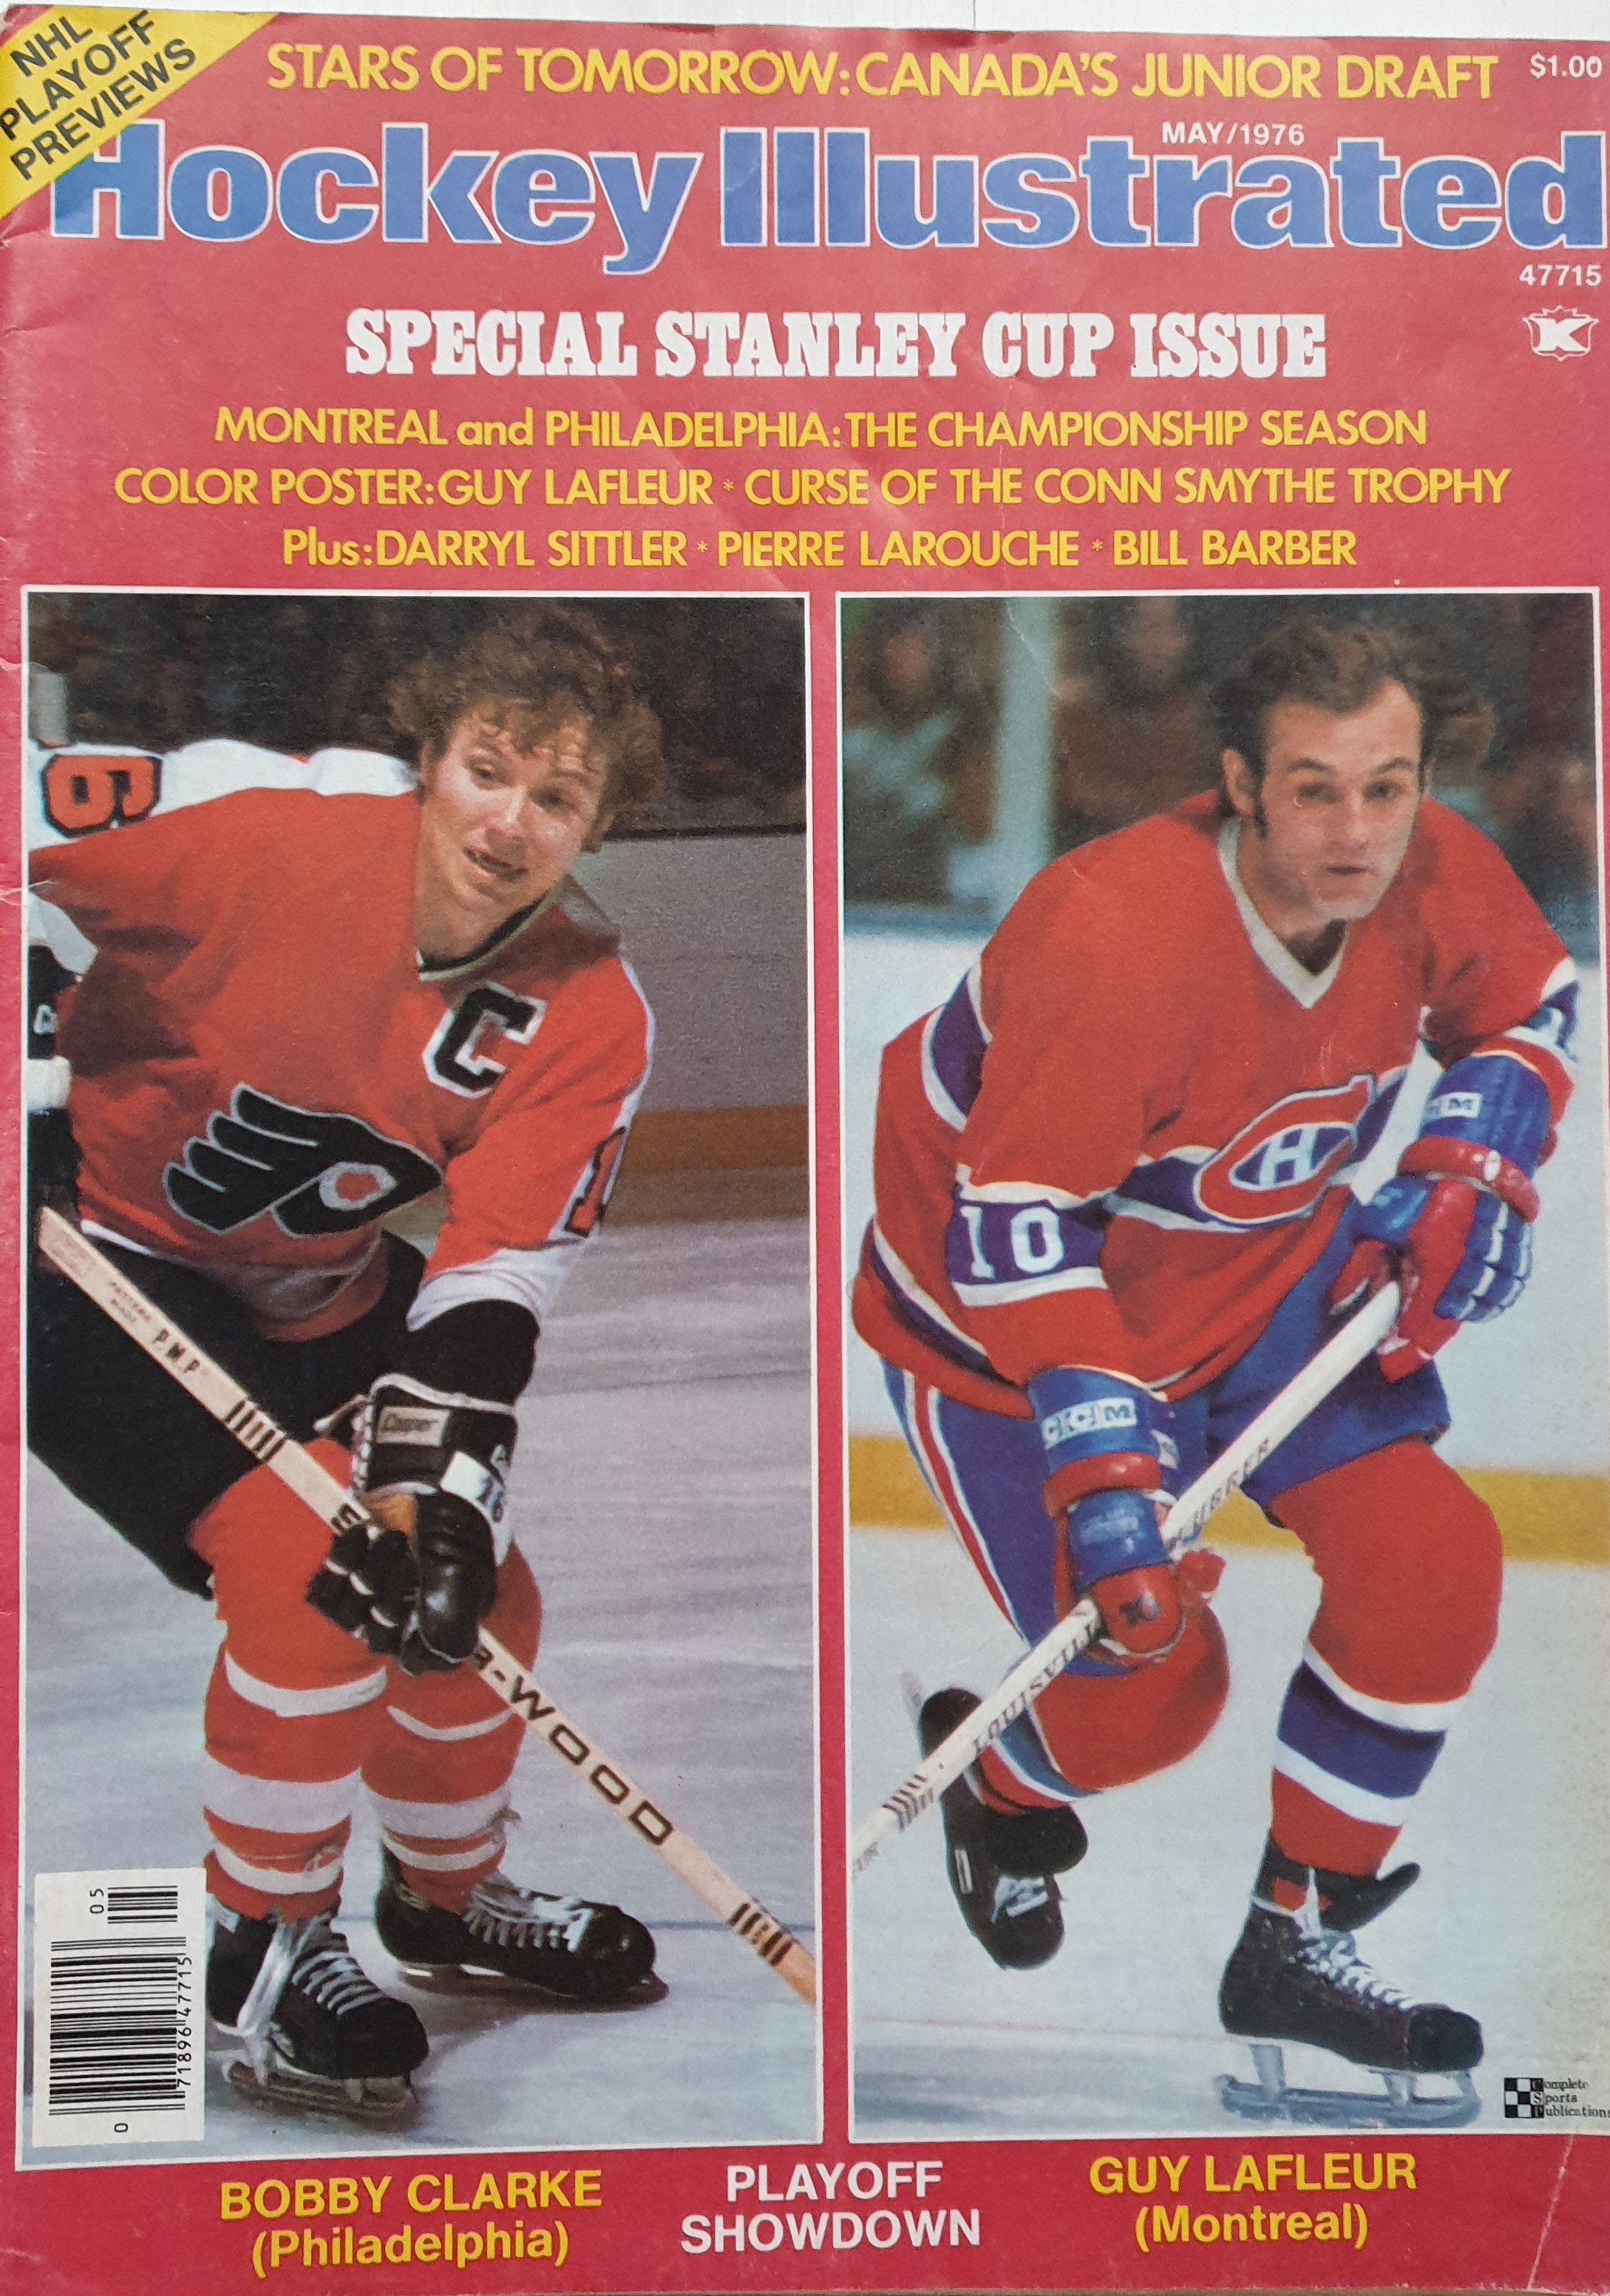 Великие противостояния НХЛ. Монреаль Канадиенс против Филадельфии Флайерс середины 1970-х. Guy Lafleur vs Bobby Clarke